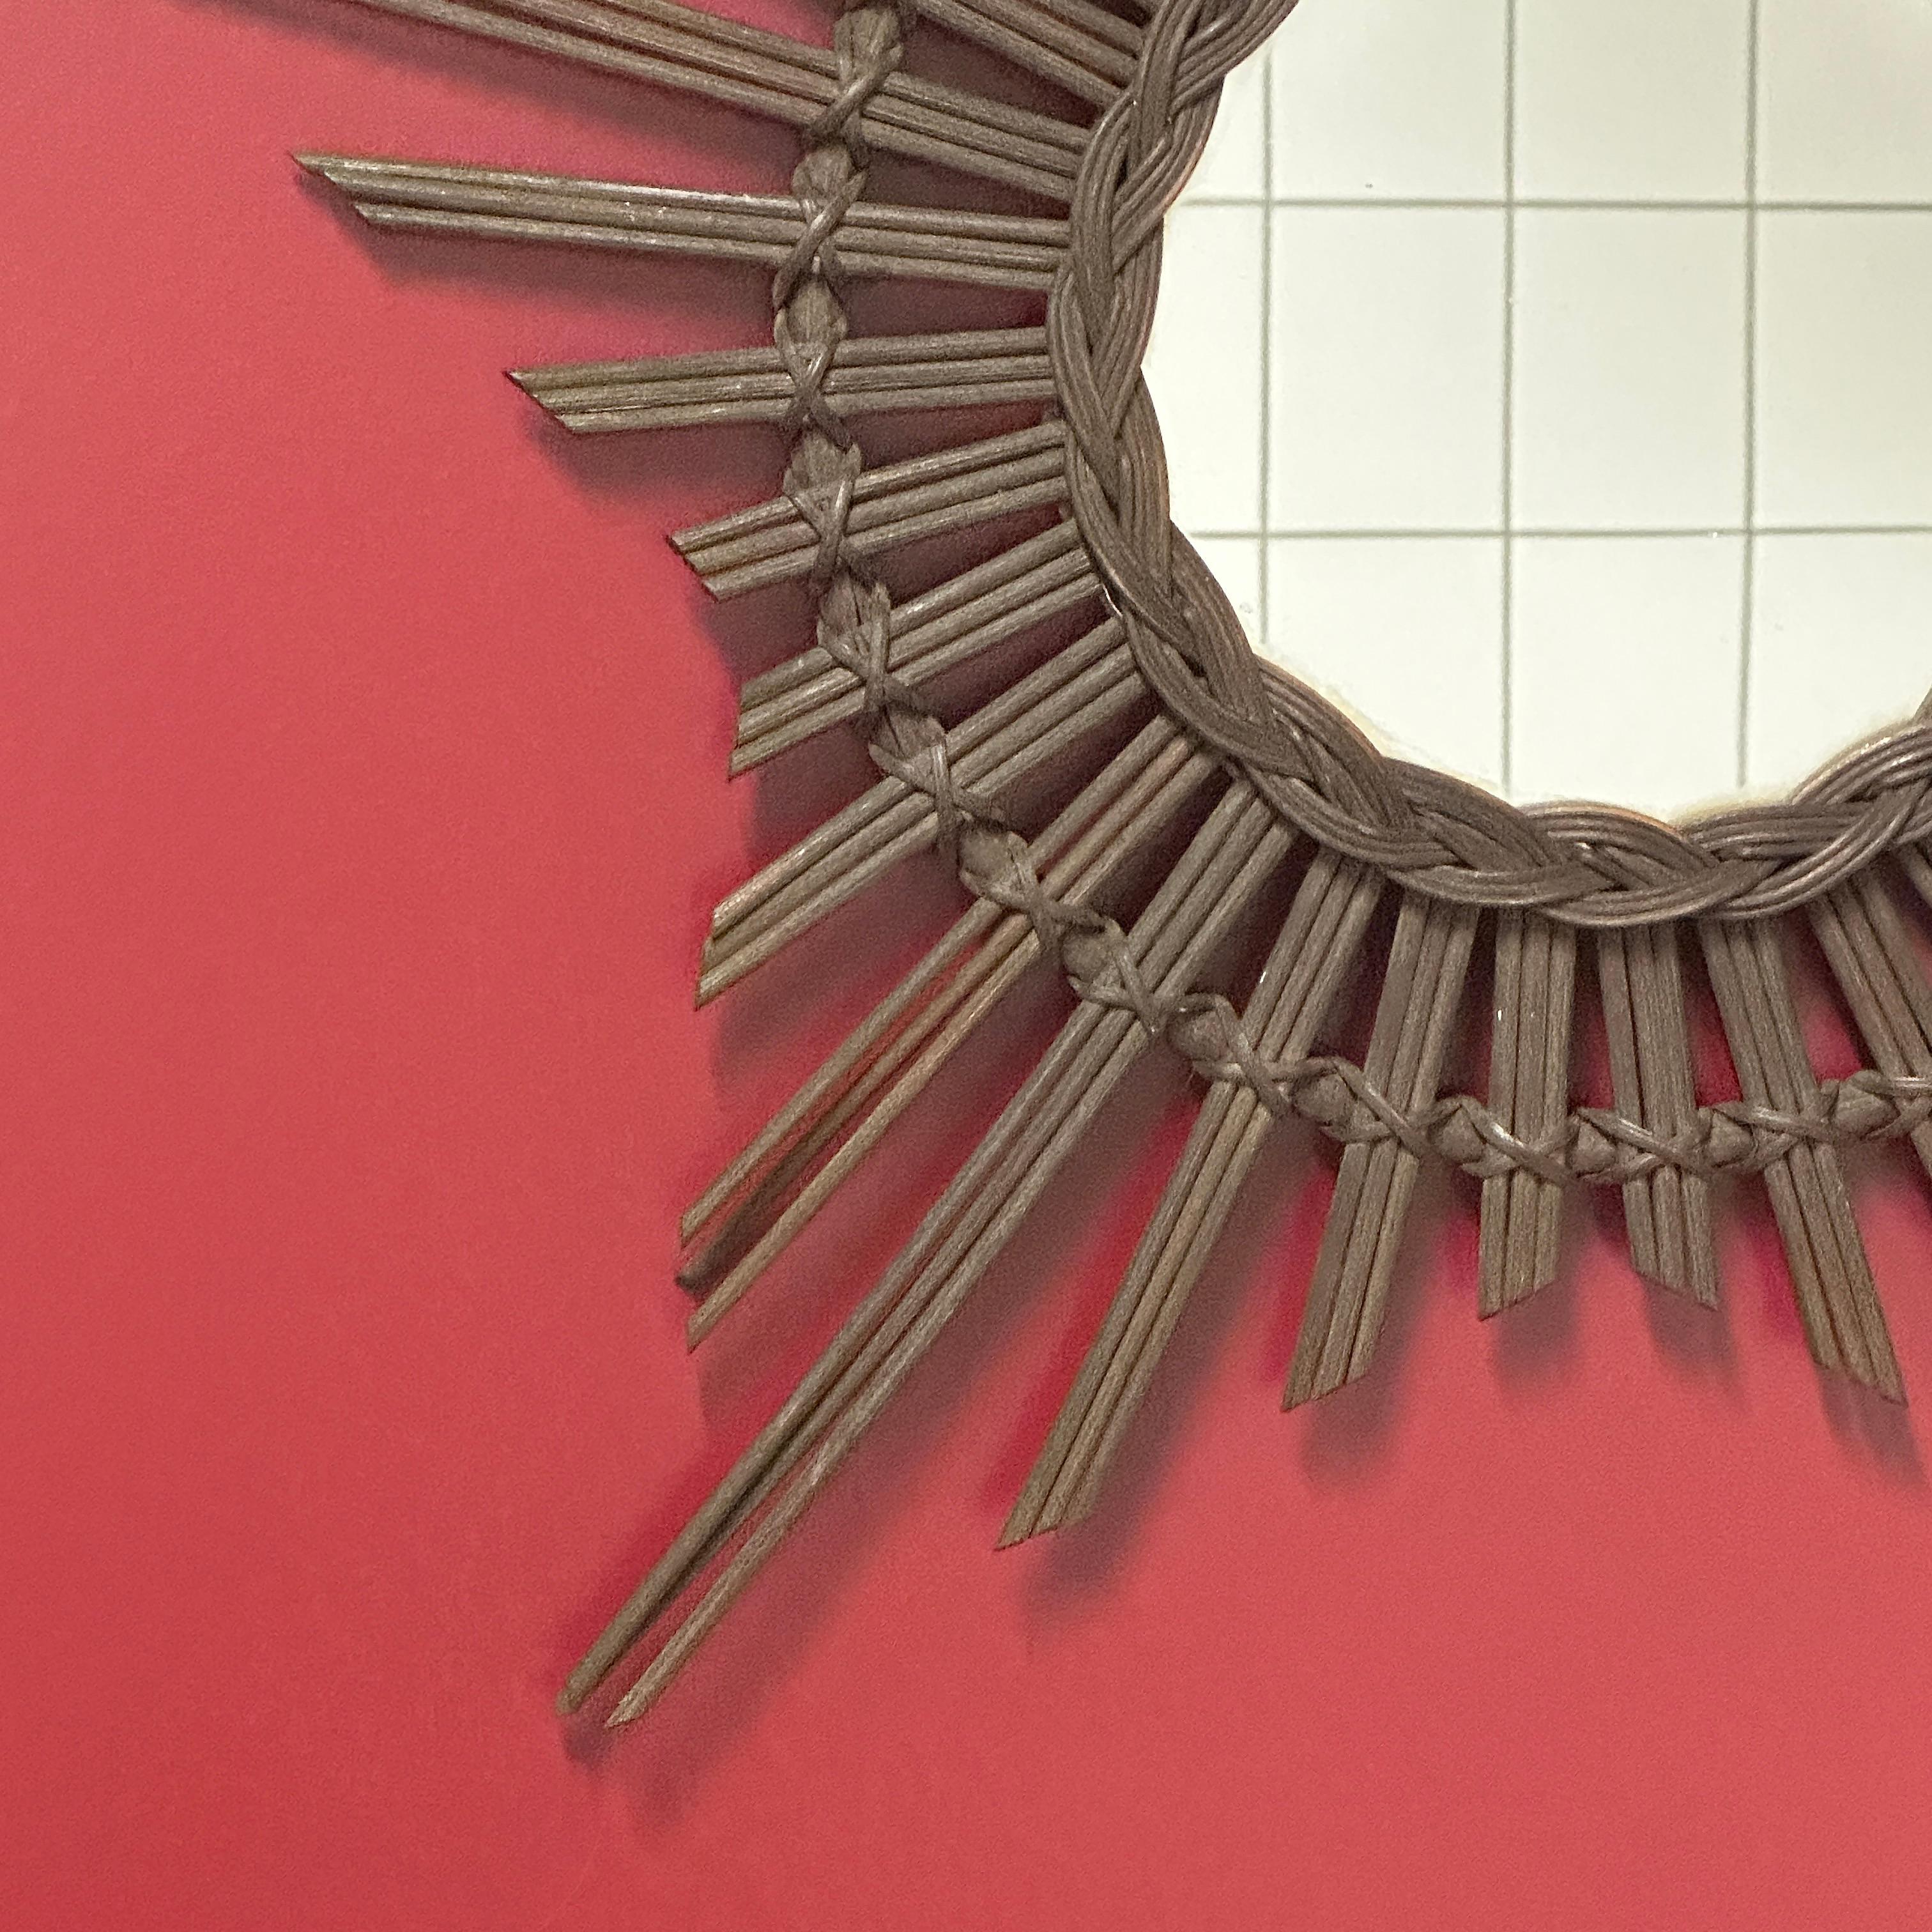 Magnifique miroir en rotin et osier tressé à la main en forme d'étoile et de soleil. Ce miroir présente un travail artisanal au niveau du cadre qui le rend très décoratif, Allemagne, années 1960. Le miroir seul a un diamètre d'environ 6,5